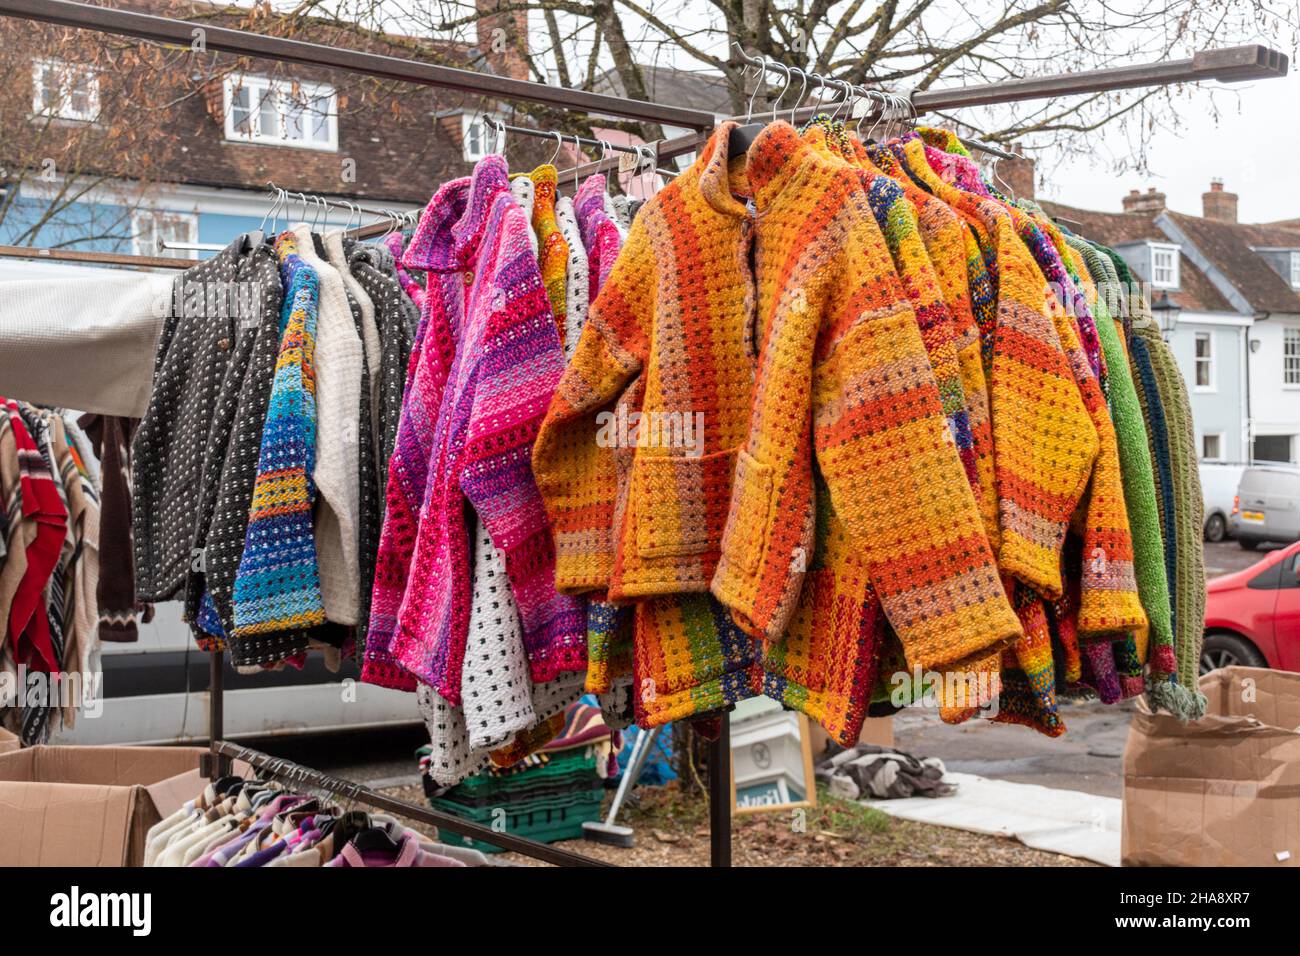 Puesto de mercado con chaquetas de lana de colores brillantes, jerséis, cardigans, ropa de punto, Reino Unido Foto de stock